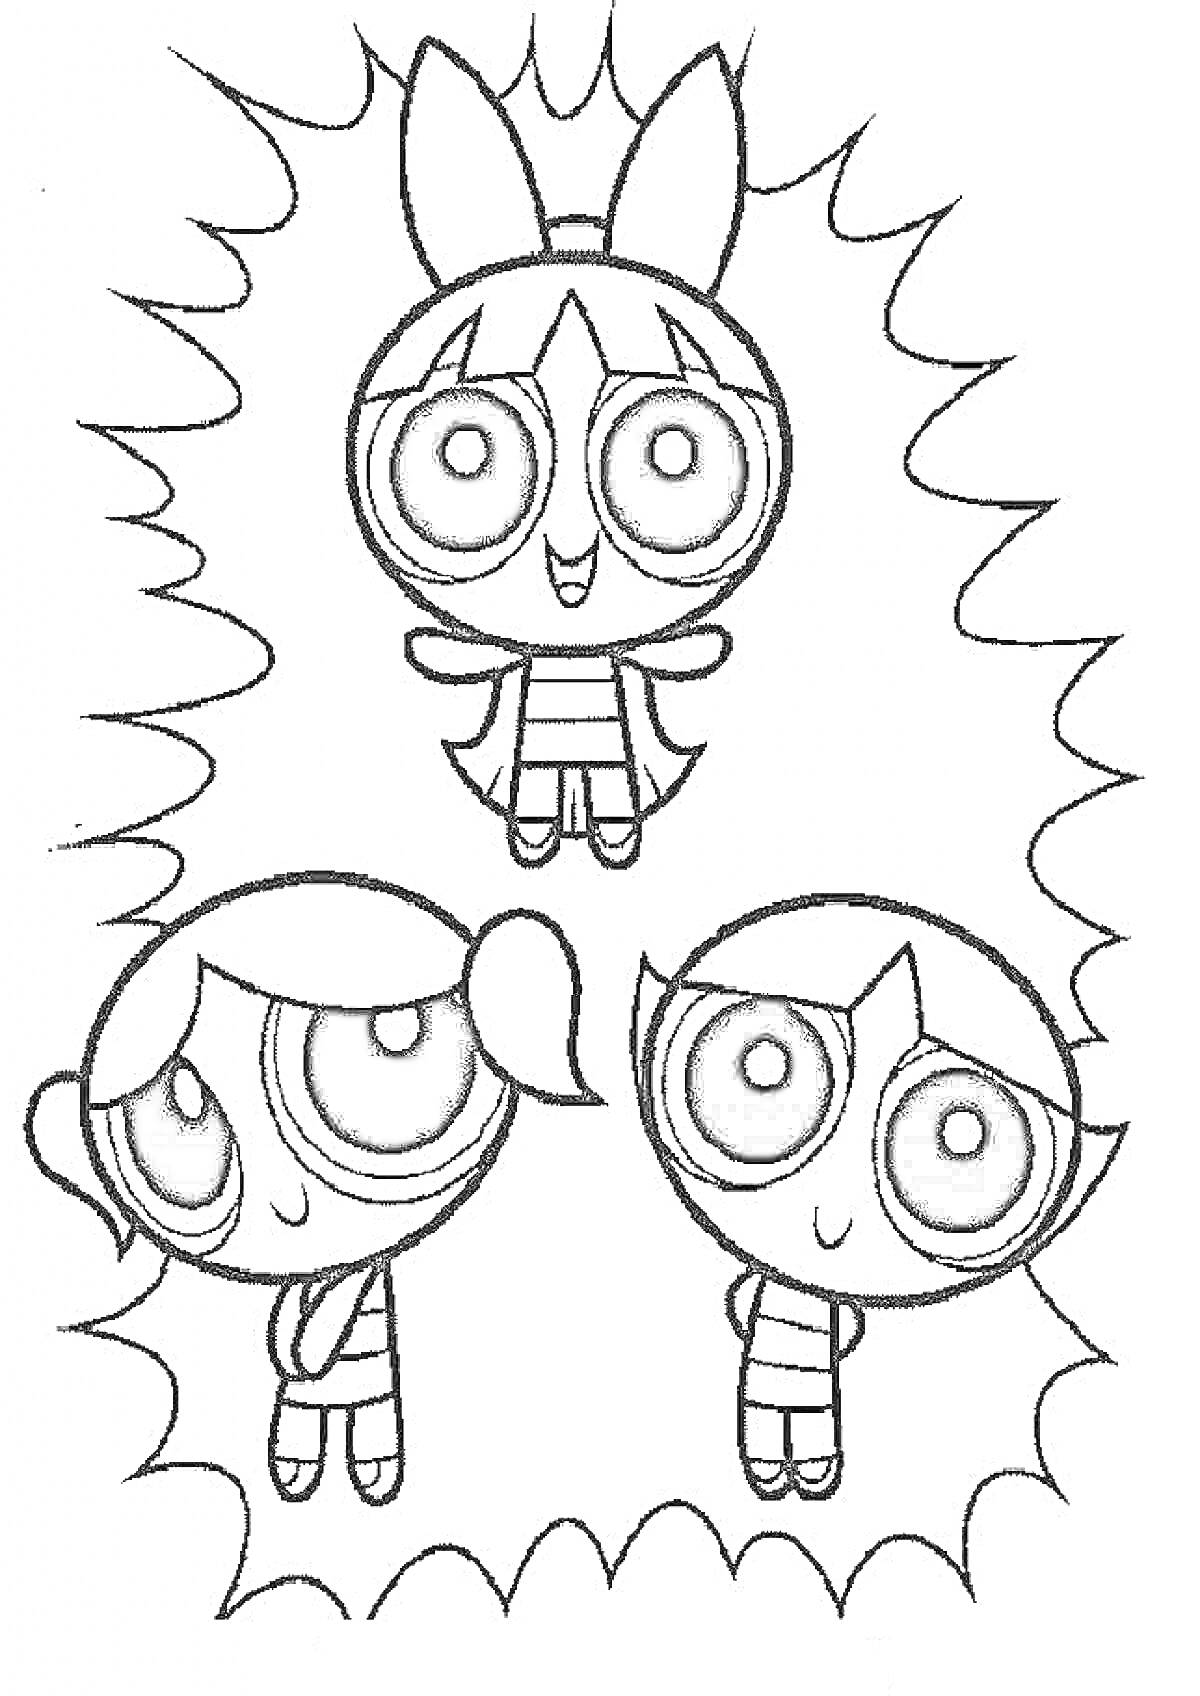 Раскраска Суперкрошки, три персонажа, окружены рамкой в виде вспышки